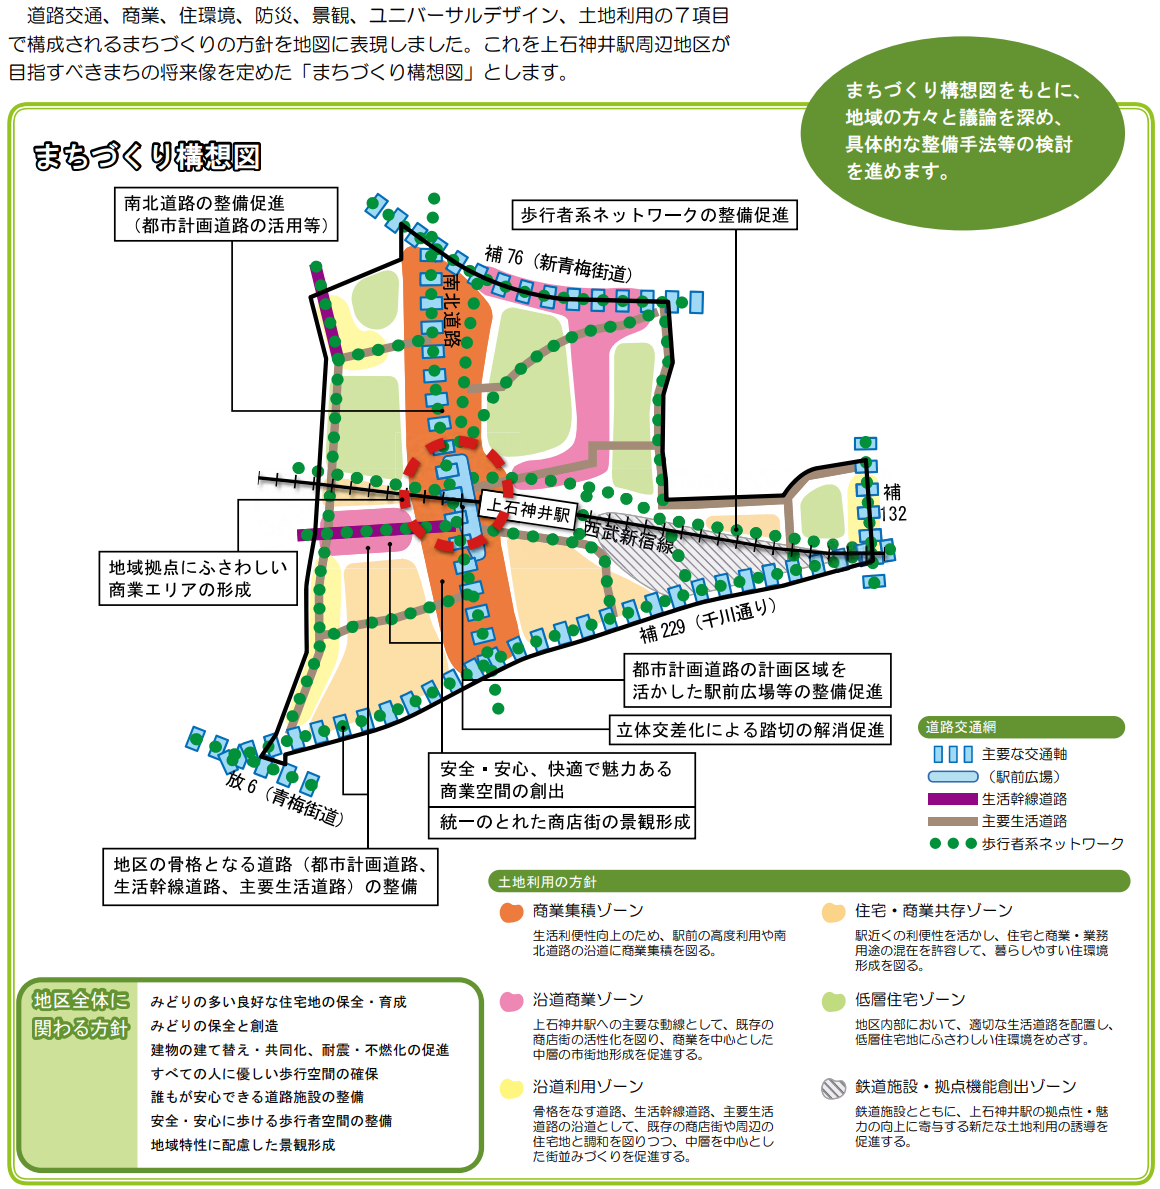 「上石神井駅周辺地区まちづくり構想」に基づくまちづくり構想図。出典：練馬区